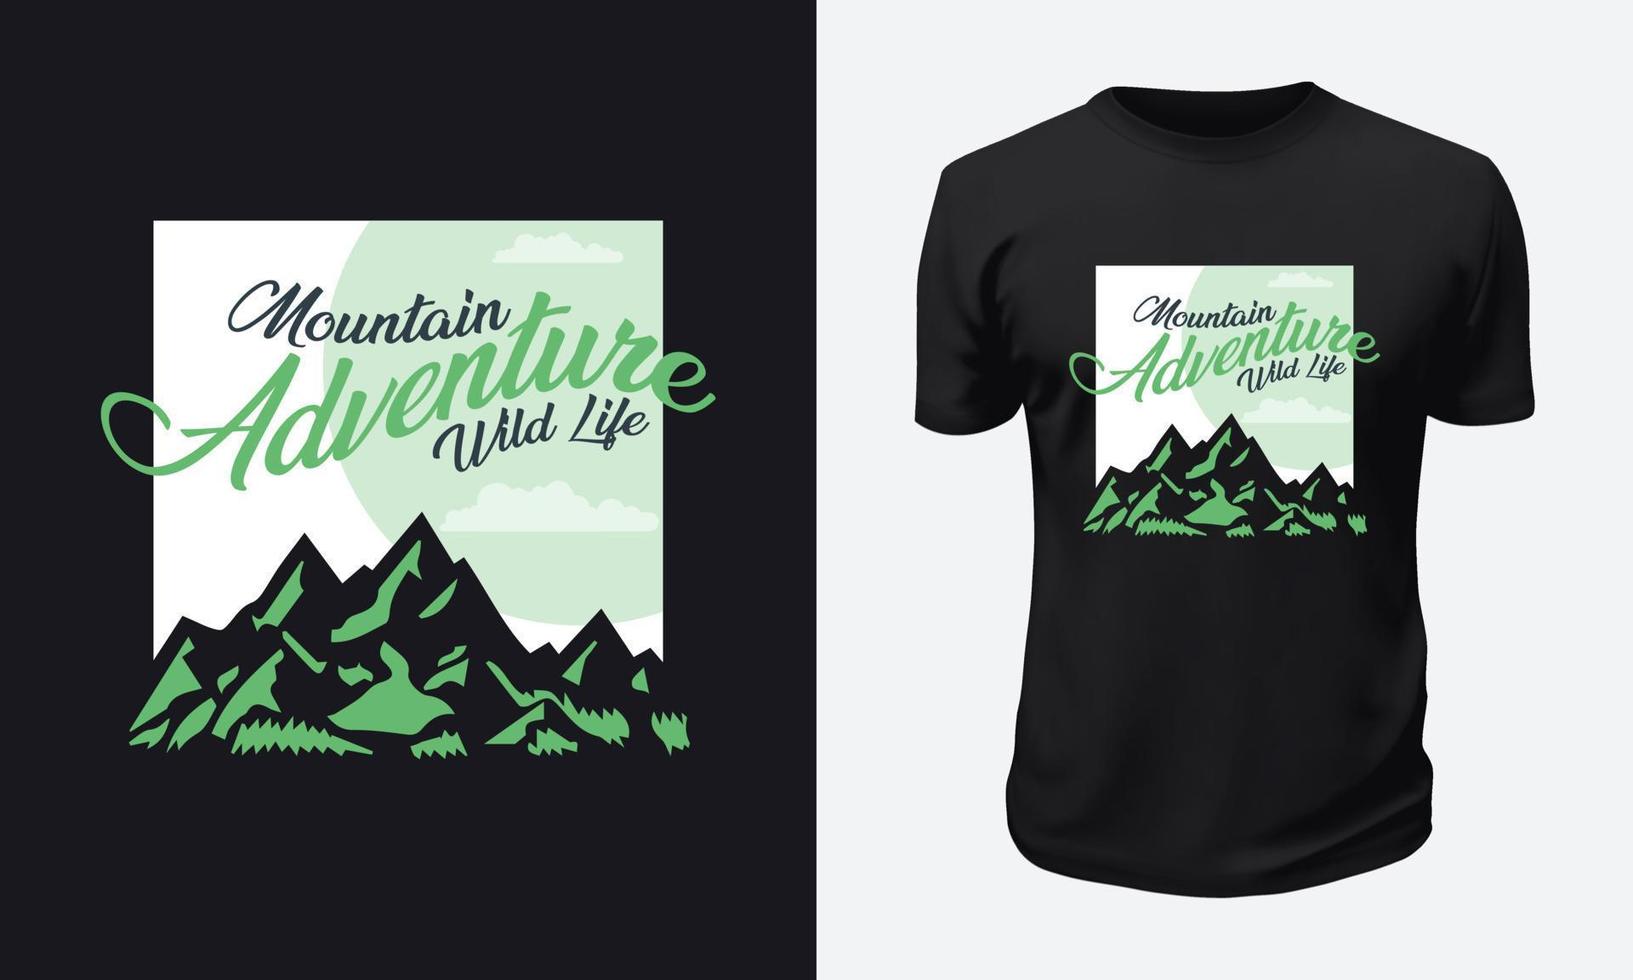 Outdoor Mountain T shirt Design vector